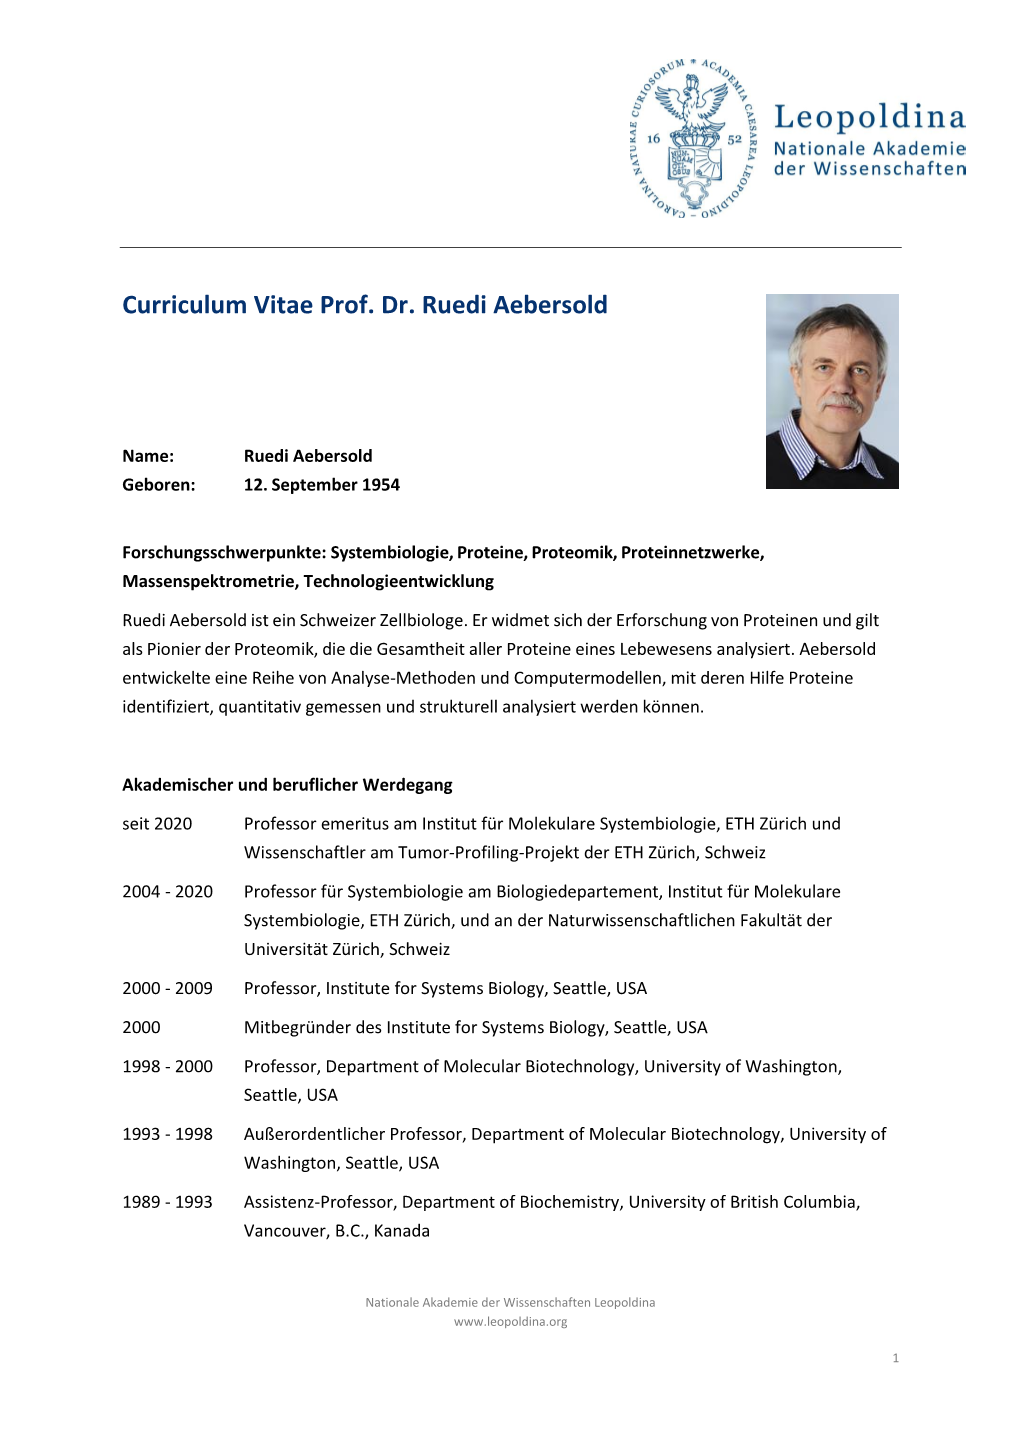 Curriculum Vitae Prof. Dr. Ruedi Aebersold